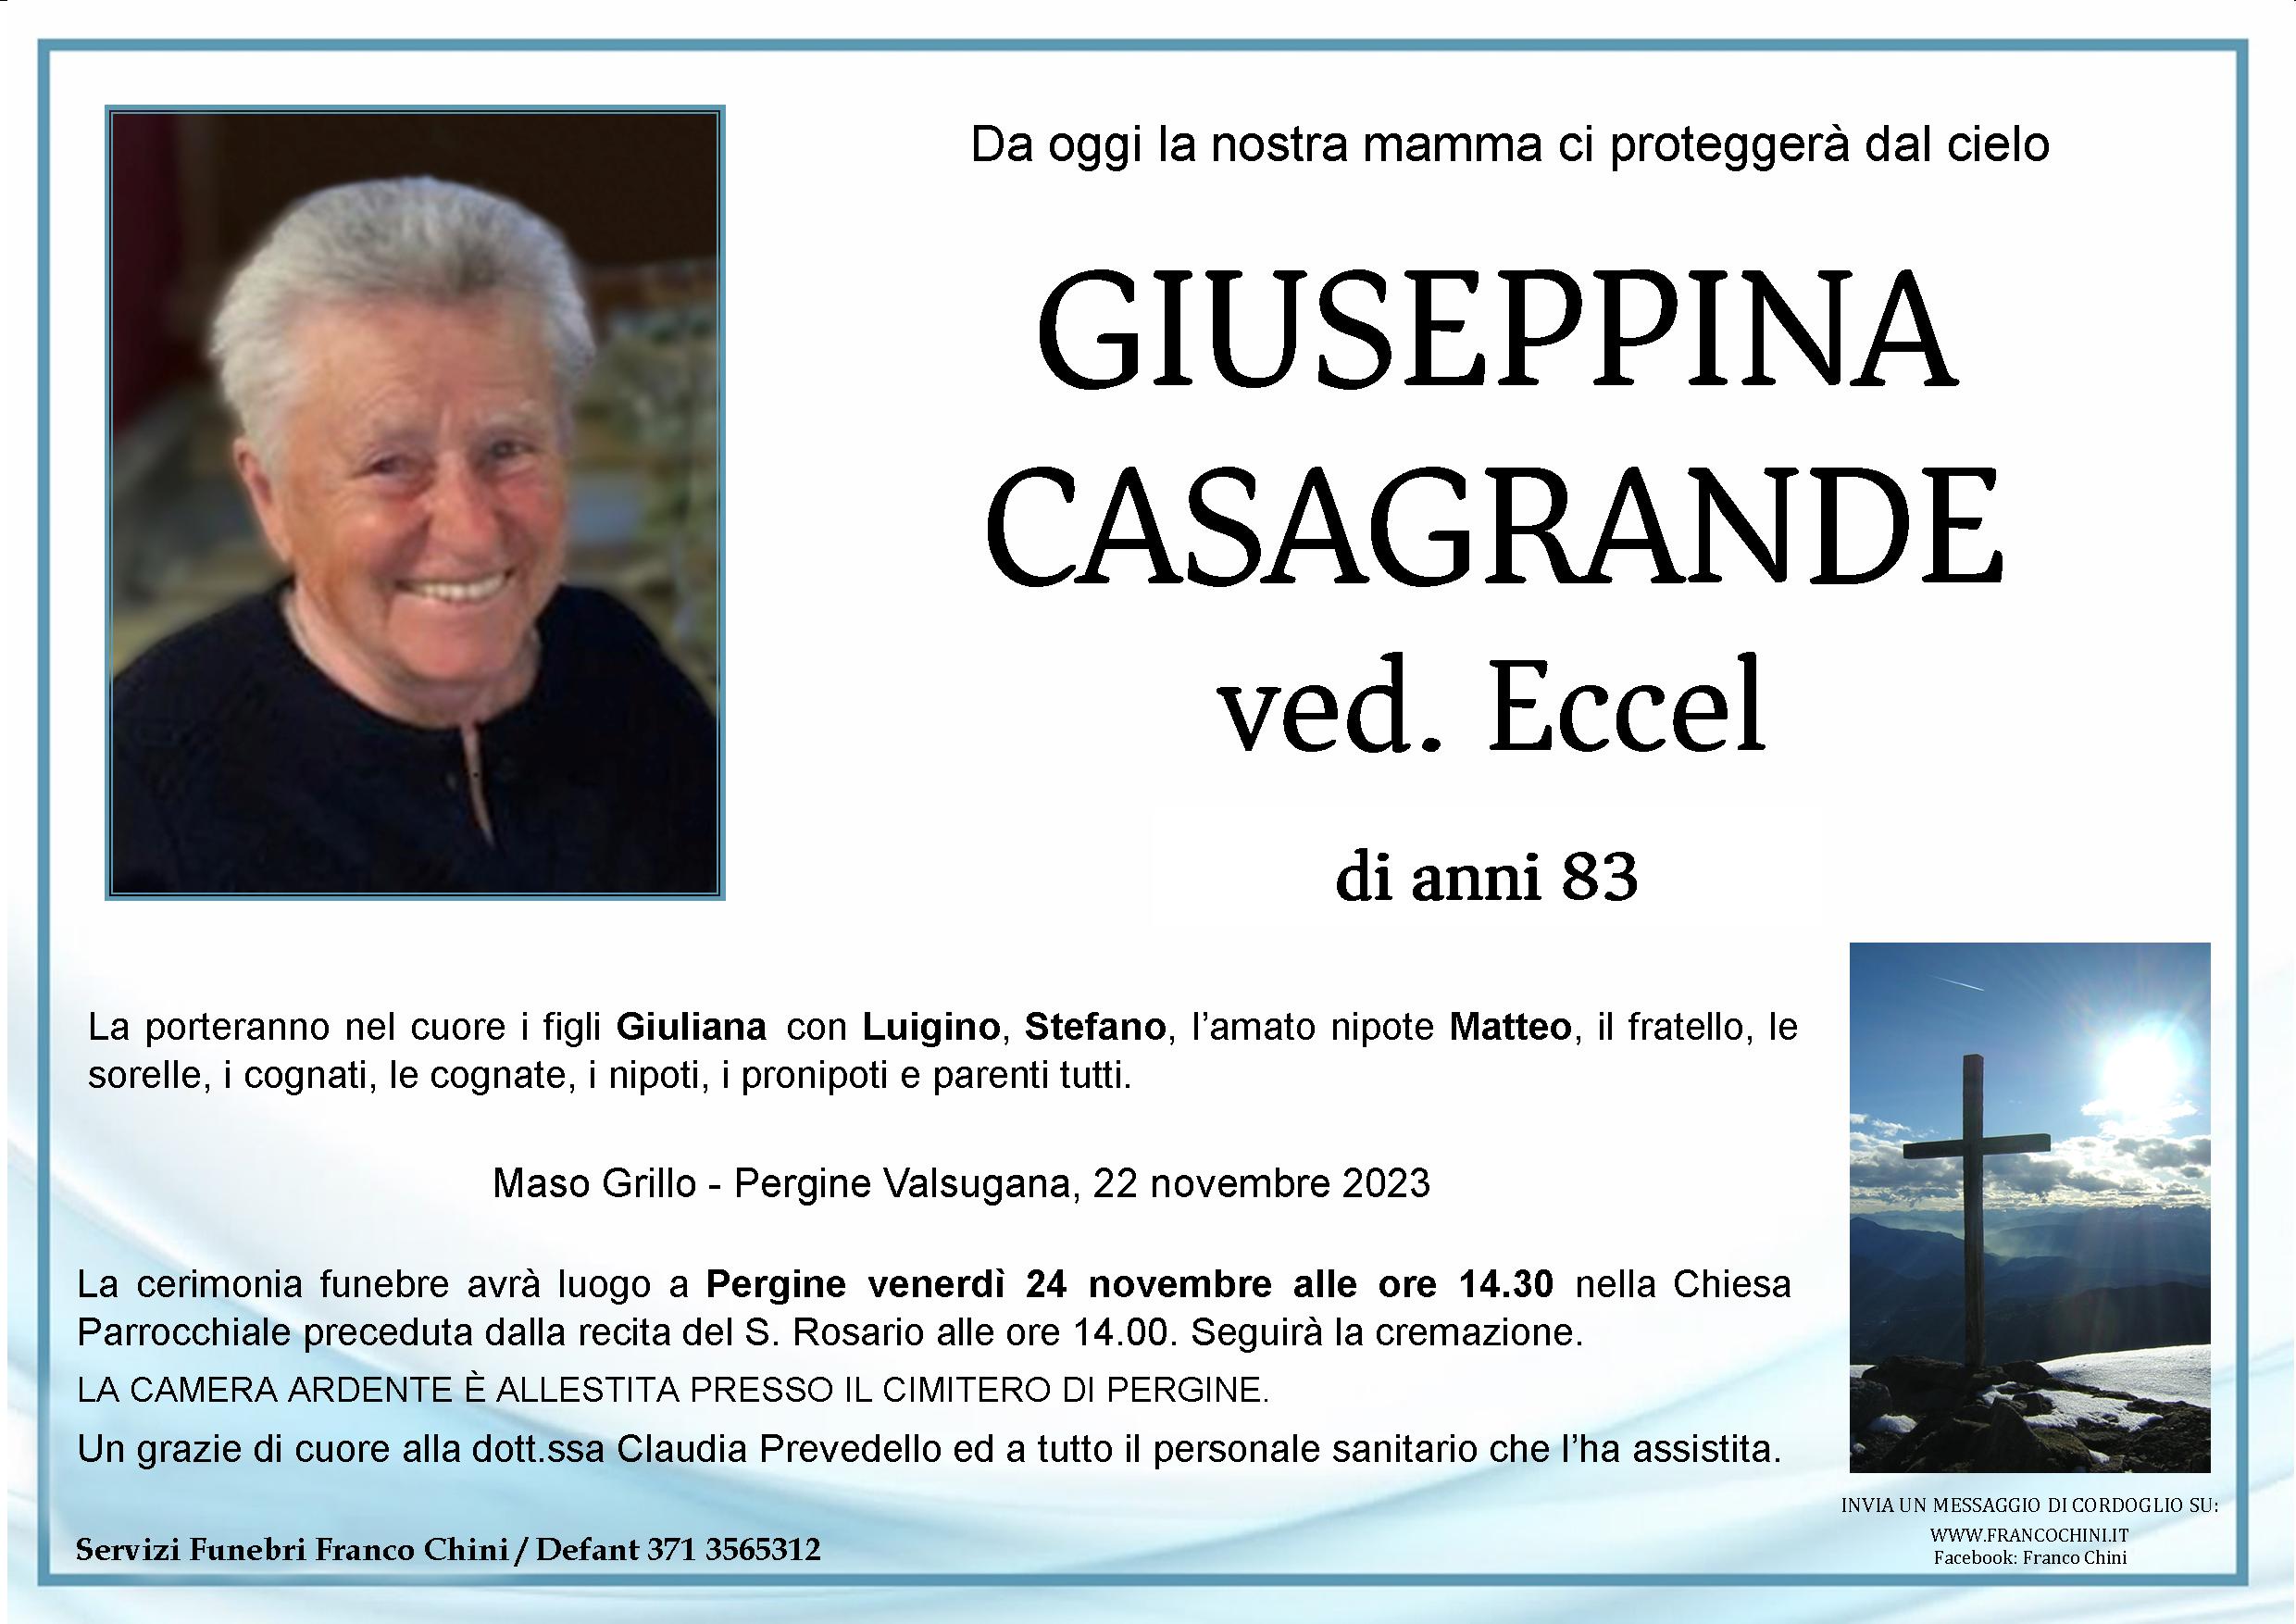 Giuseppina Casagrande